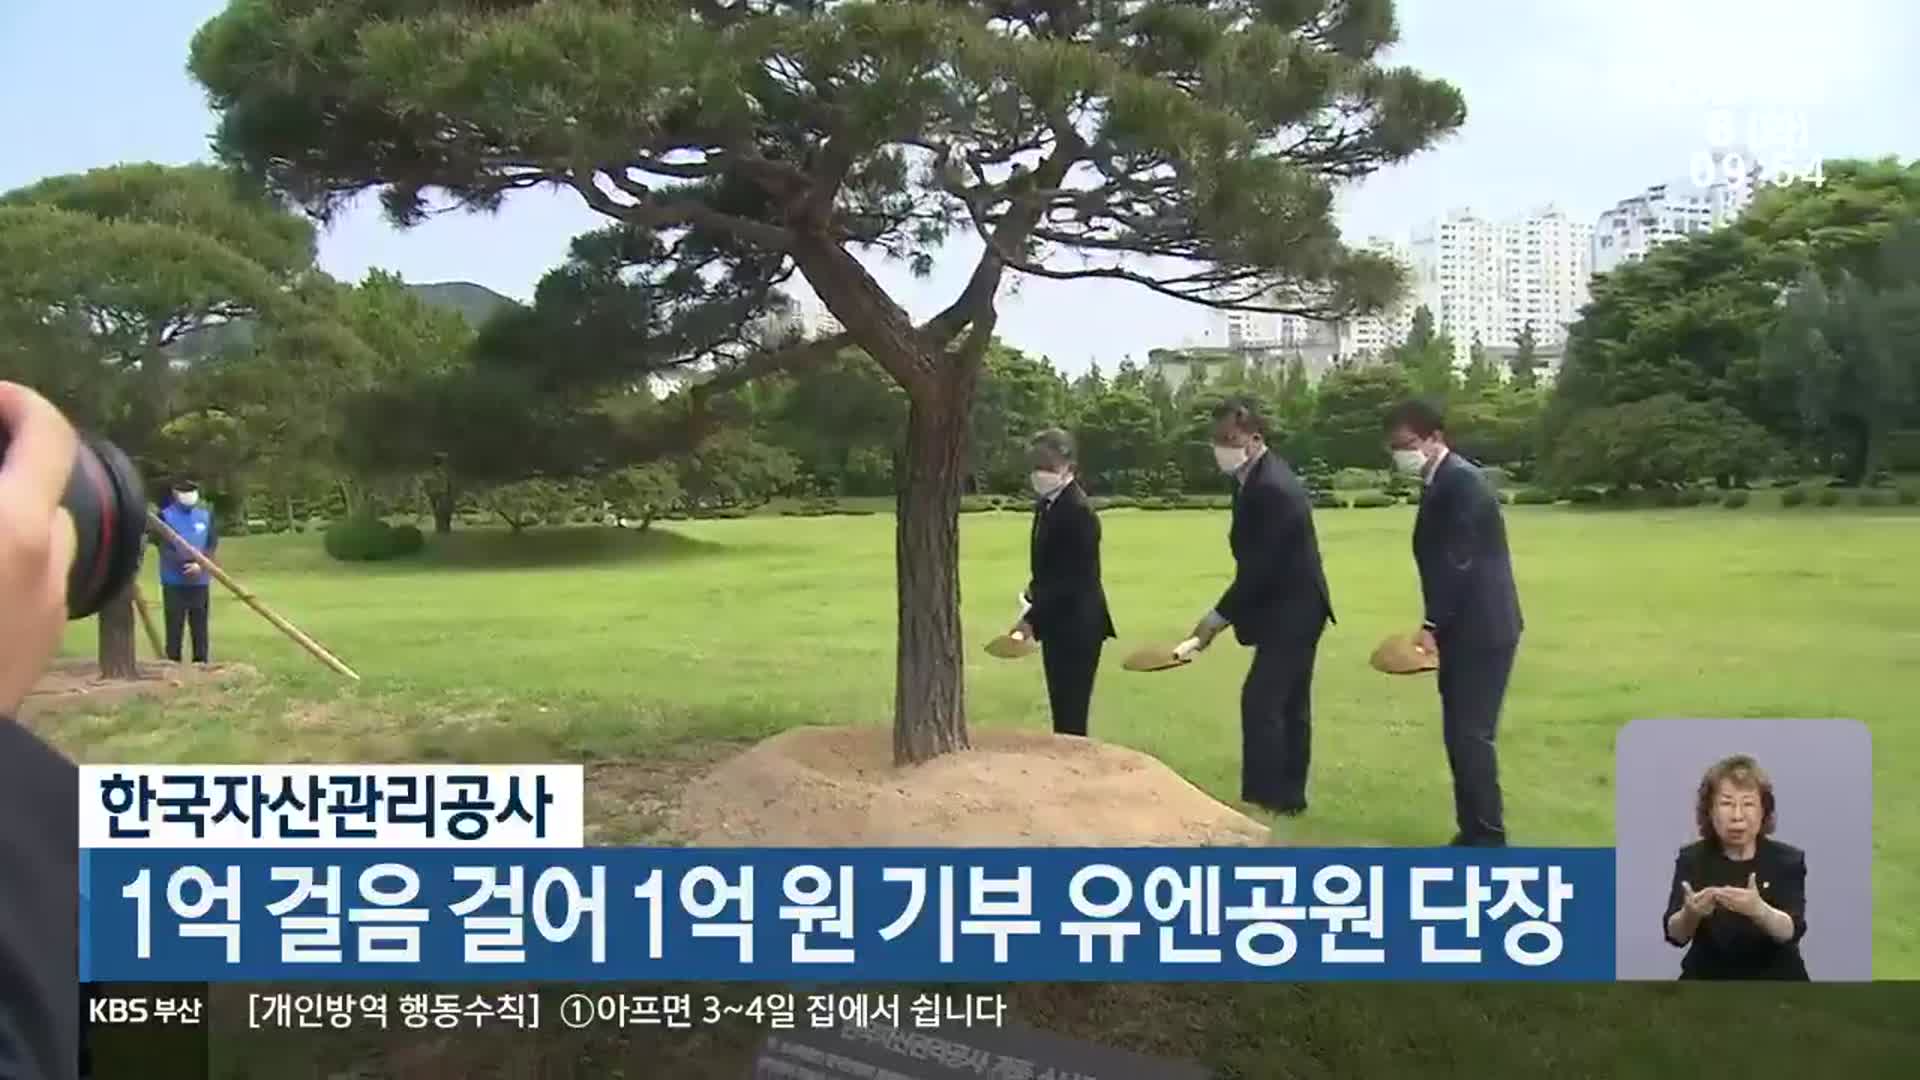 한국자산관리공사, 1억 걸음 걸어 1억 원 기부 유엔공원 단장